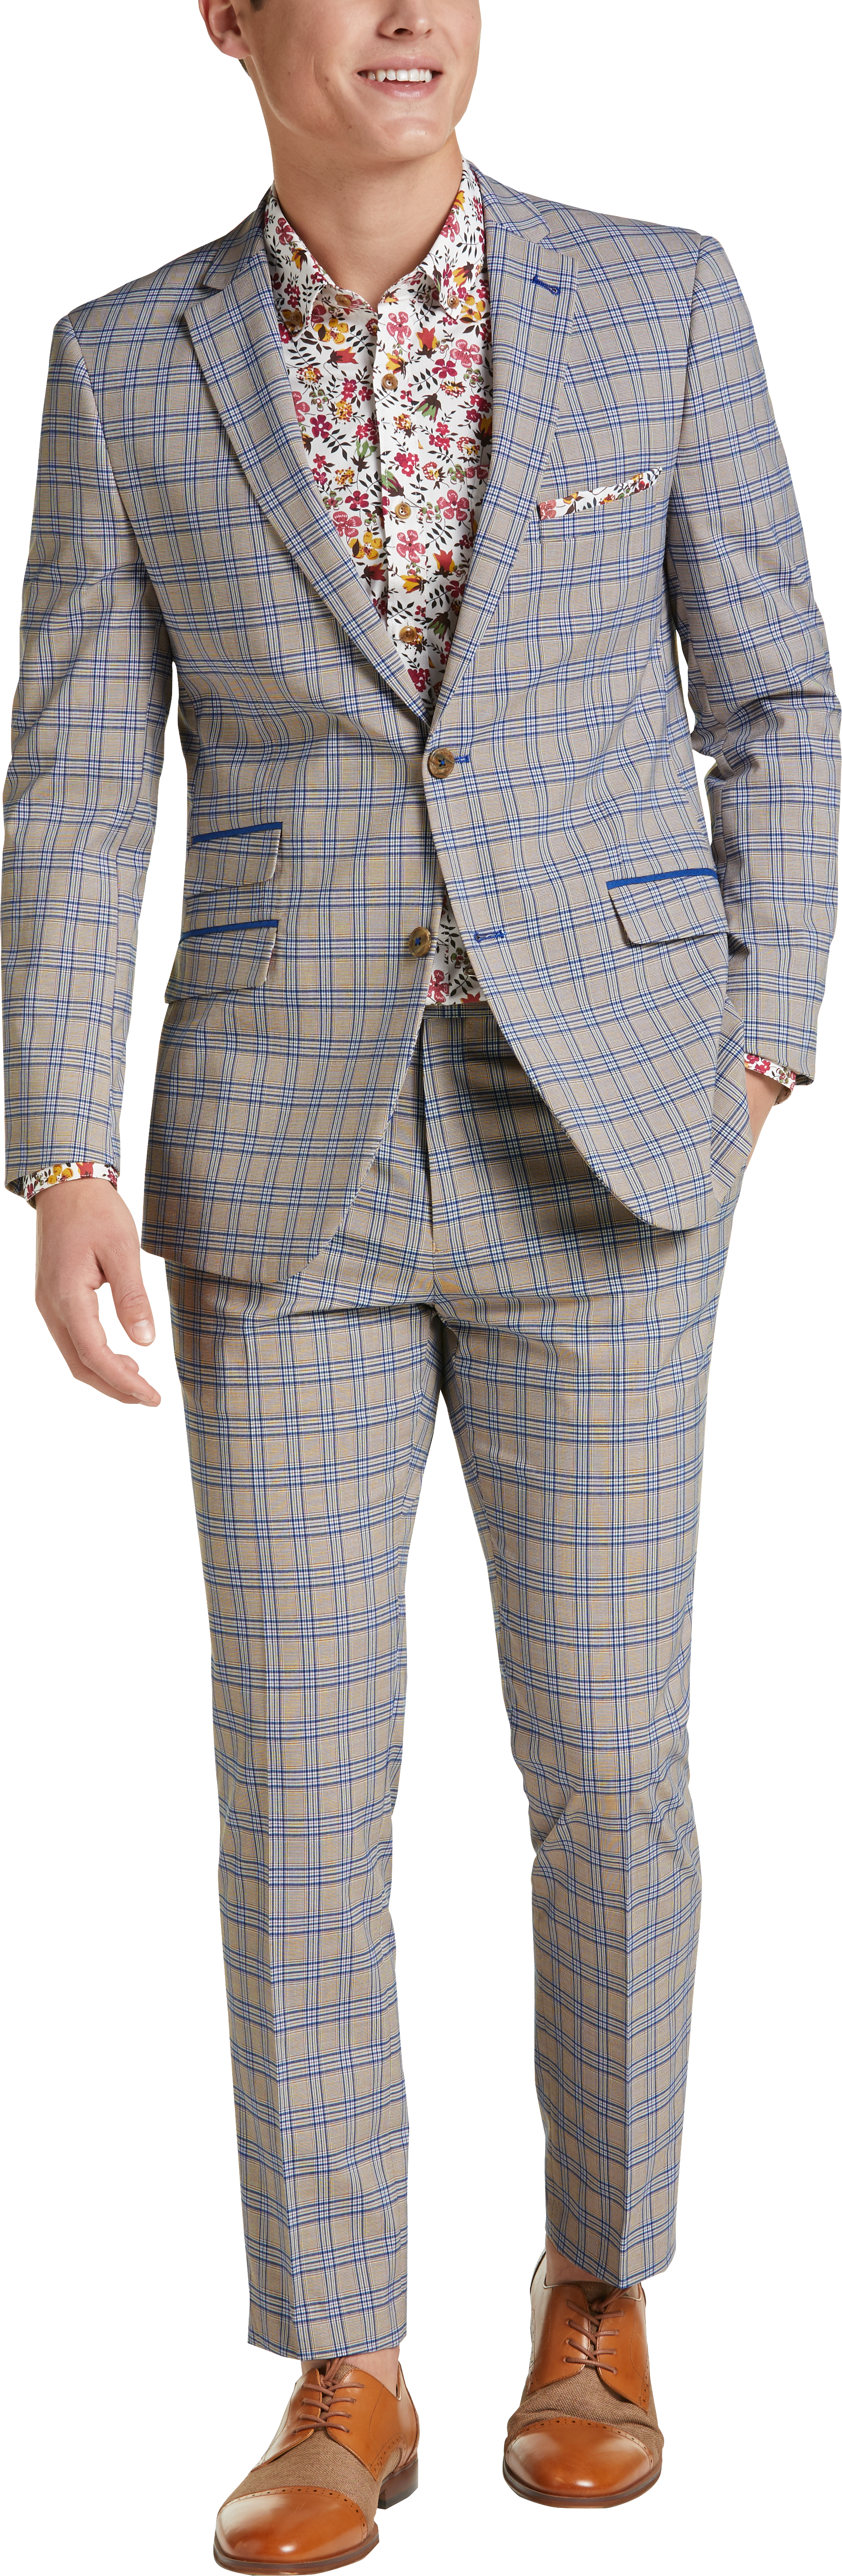 Paisley & Gray Slim Fit Suit Separates Jacket, Blue and Tan Plaid - Men ...